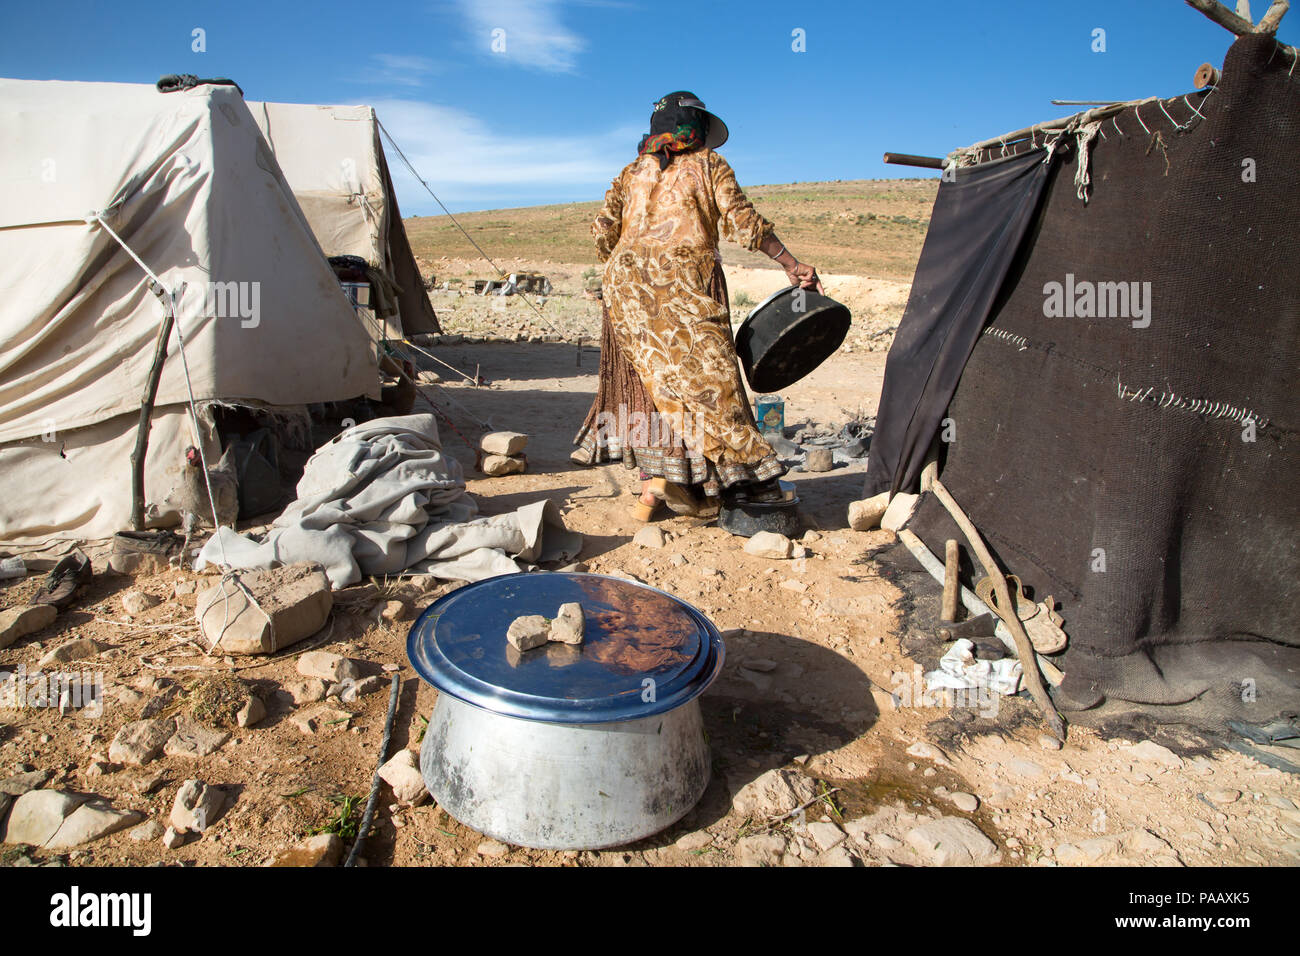 Las actividades de la vida diaria en el campamento de Qashqai, pueblo nómade, Irán Foto de stock